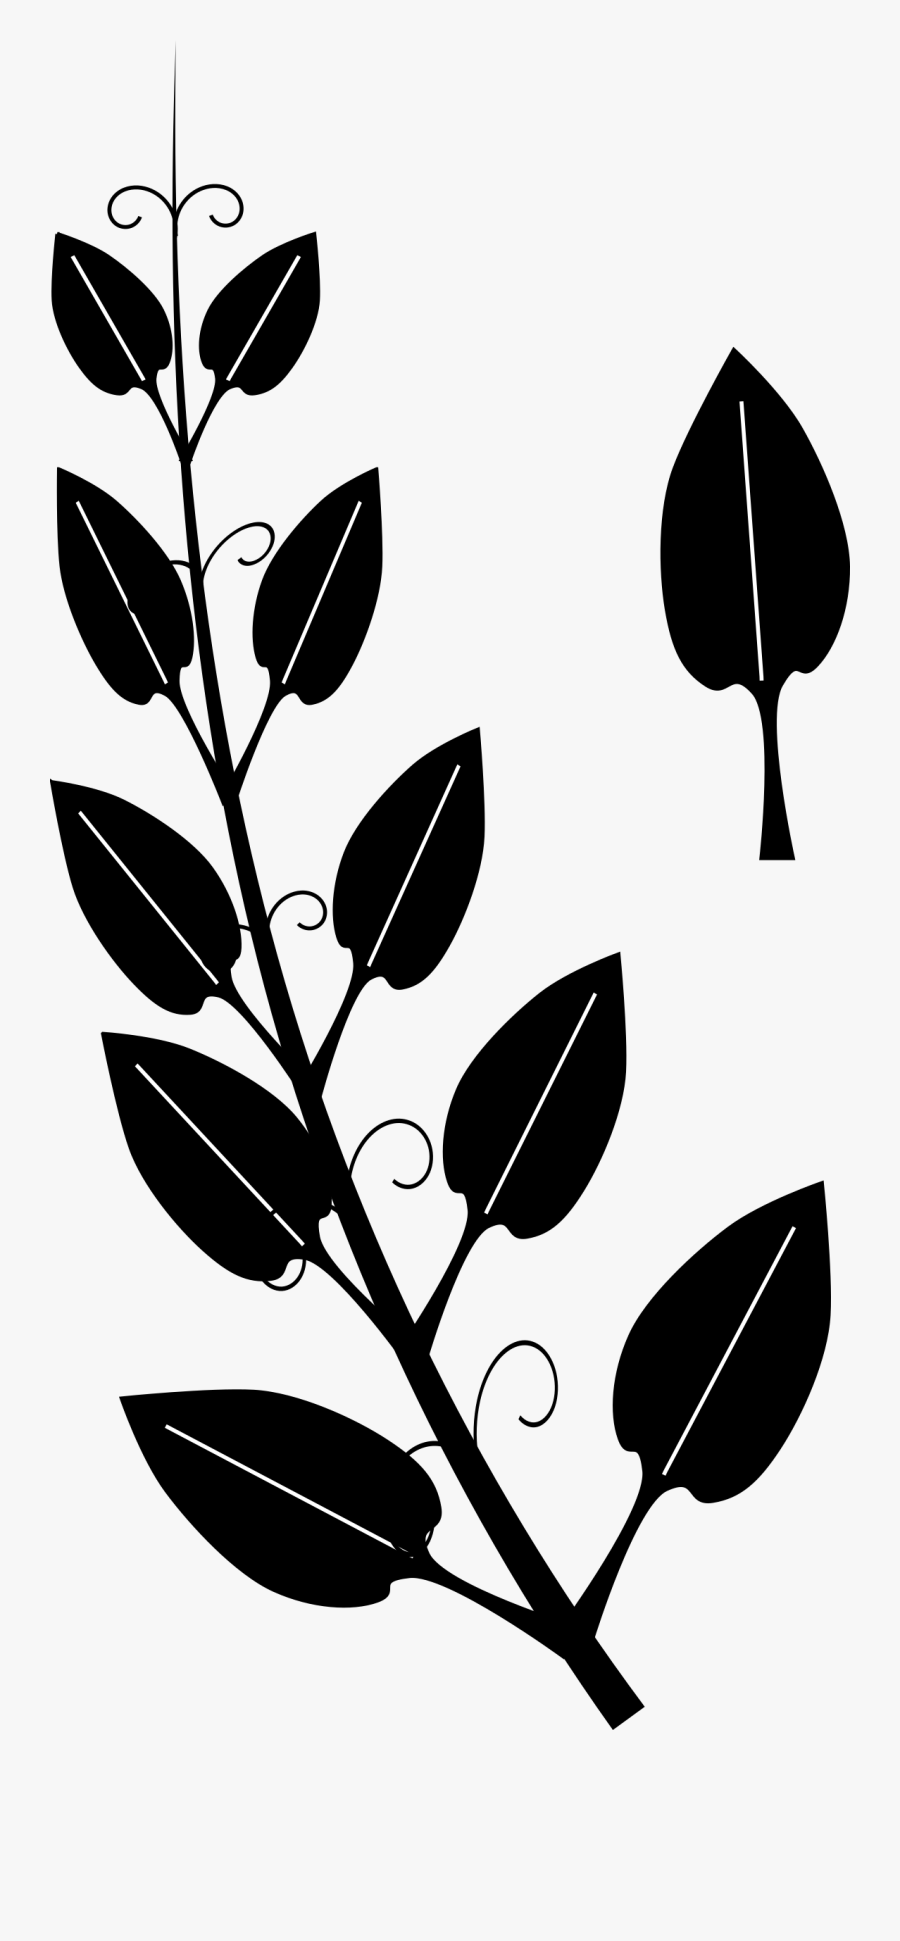 Stylized Vine By Algotruneman Clip Art - Vine Clipart Black And White, Transparent Clipart